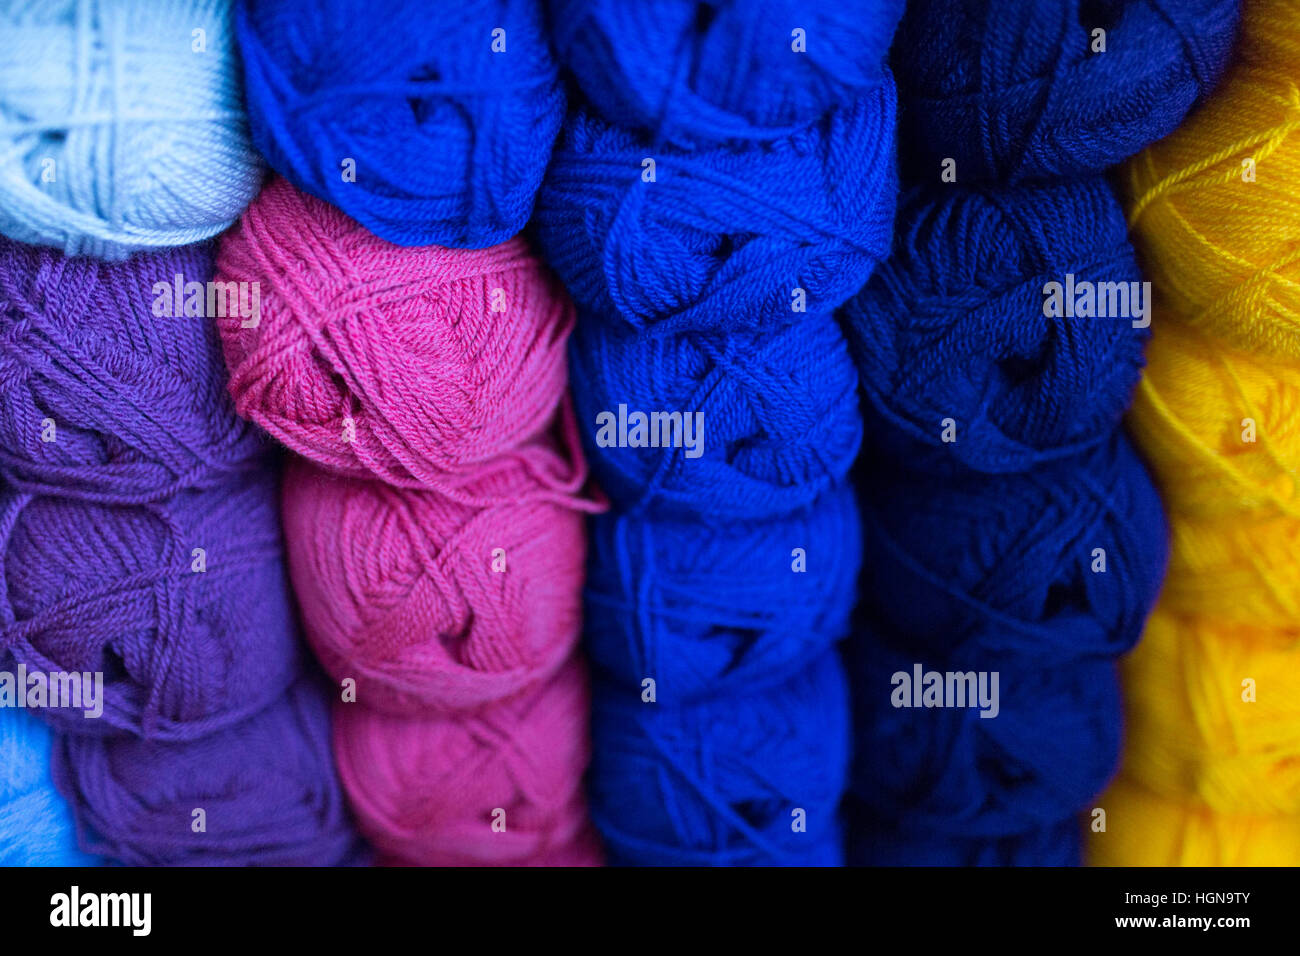 Knitting - balls of wool on a shelf Stock Photo